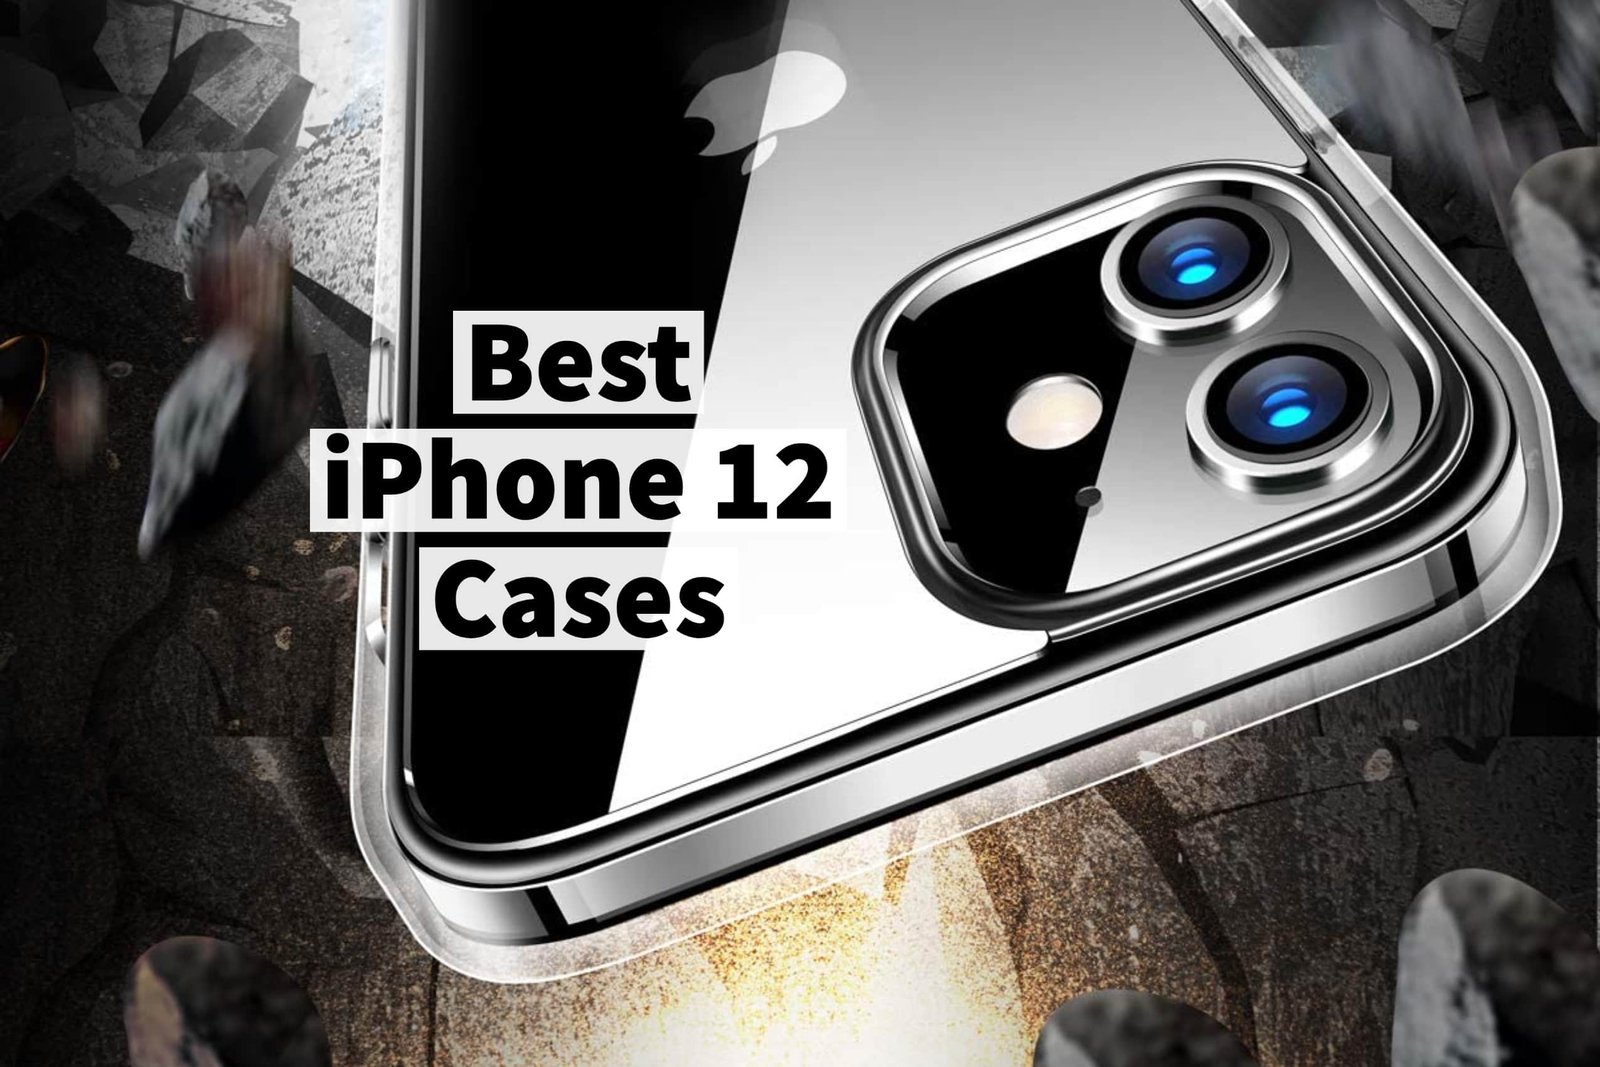 Best iPhone 12 Cases